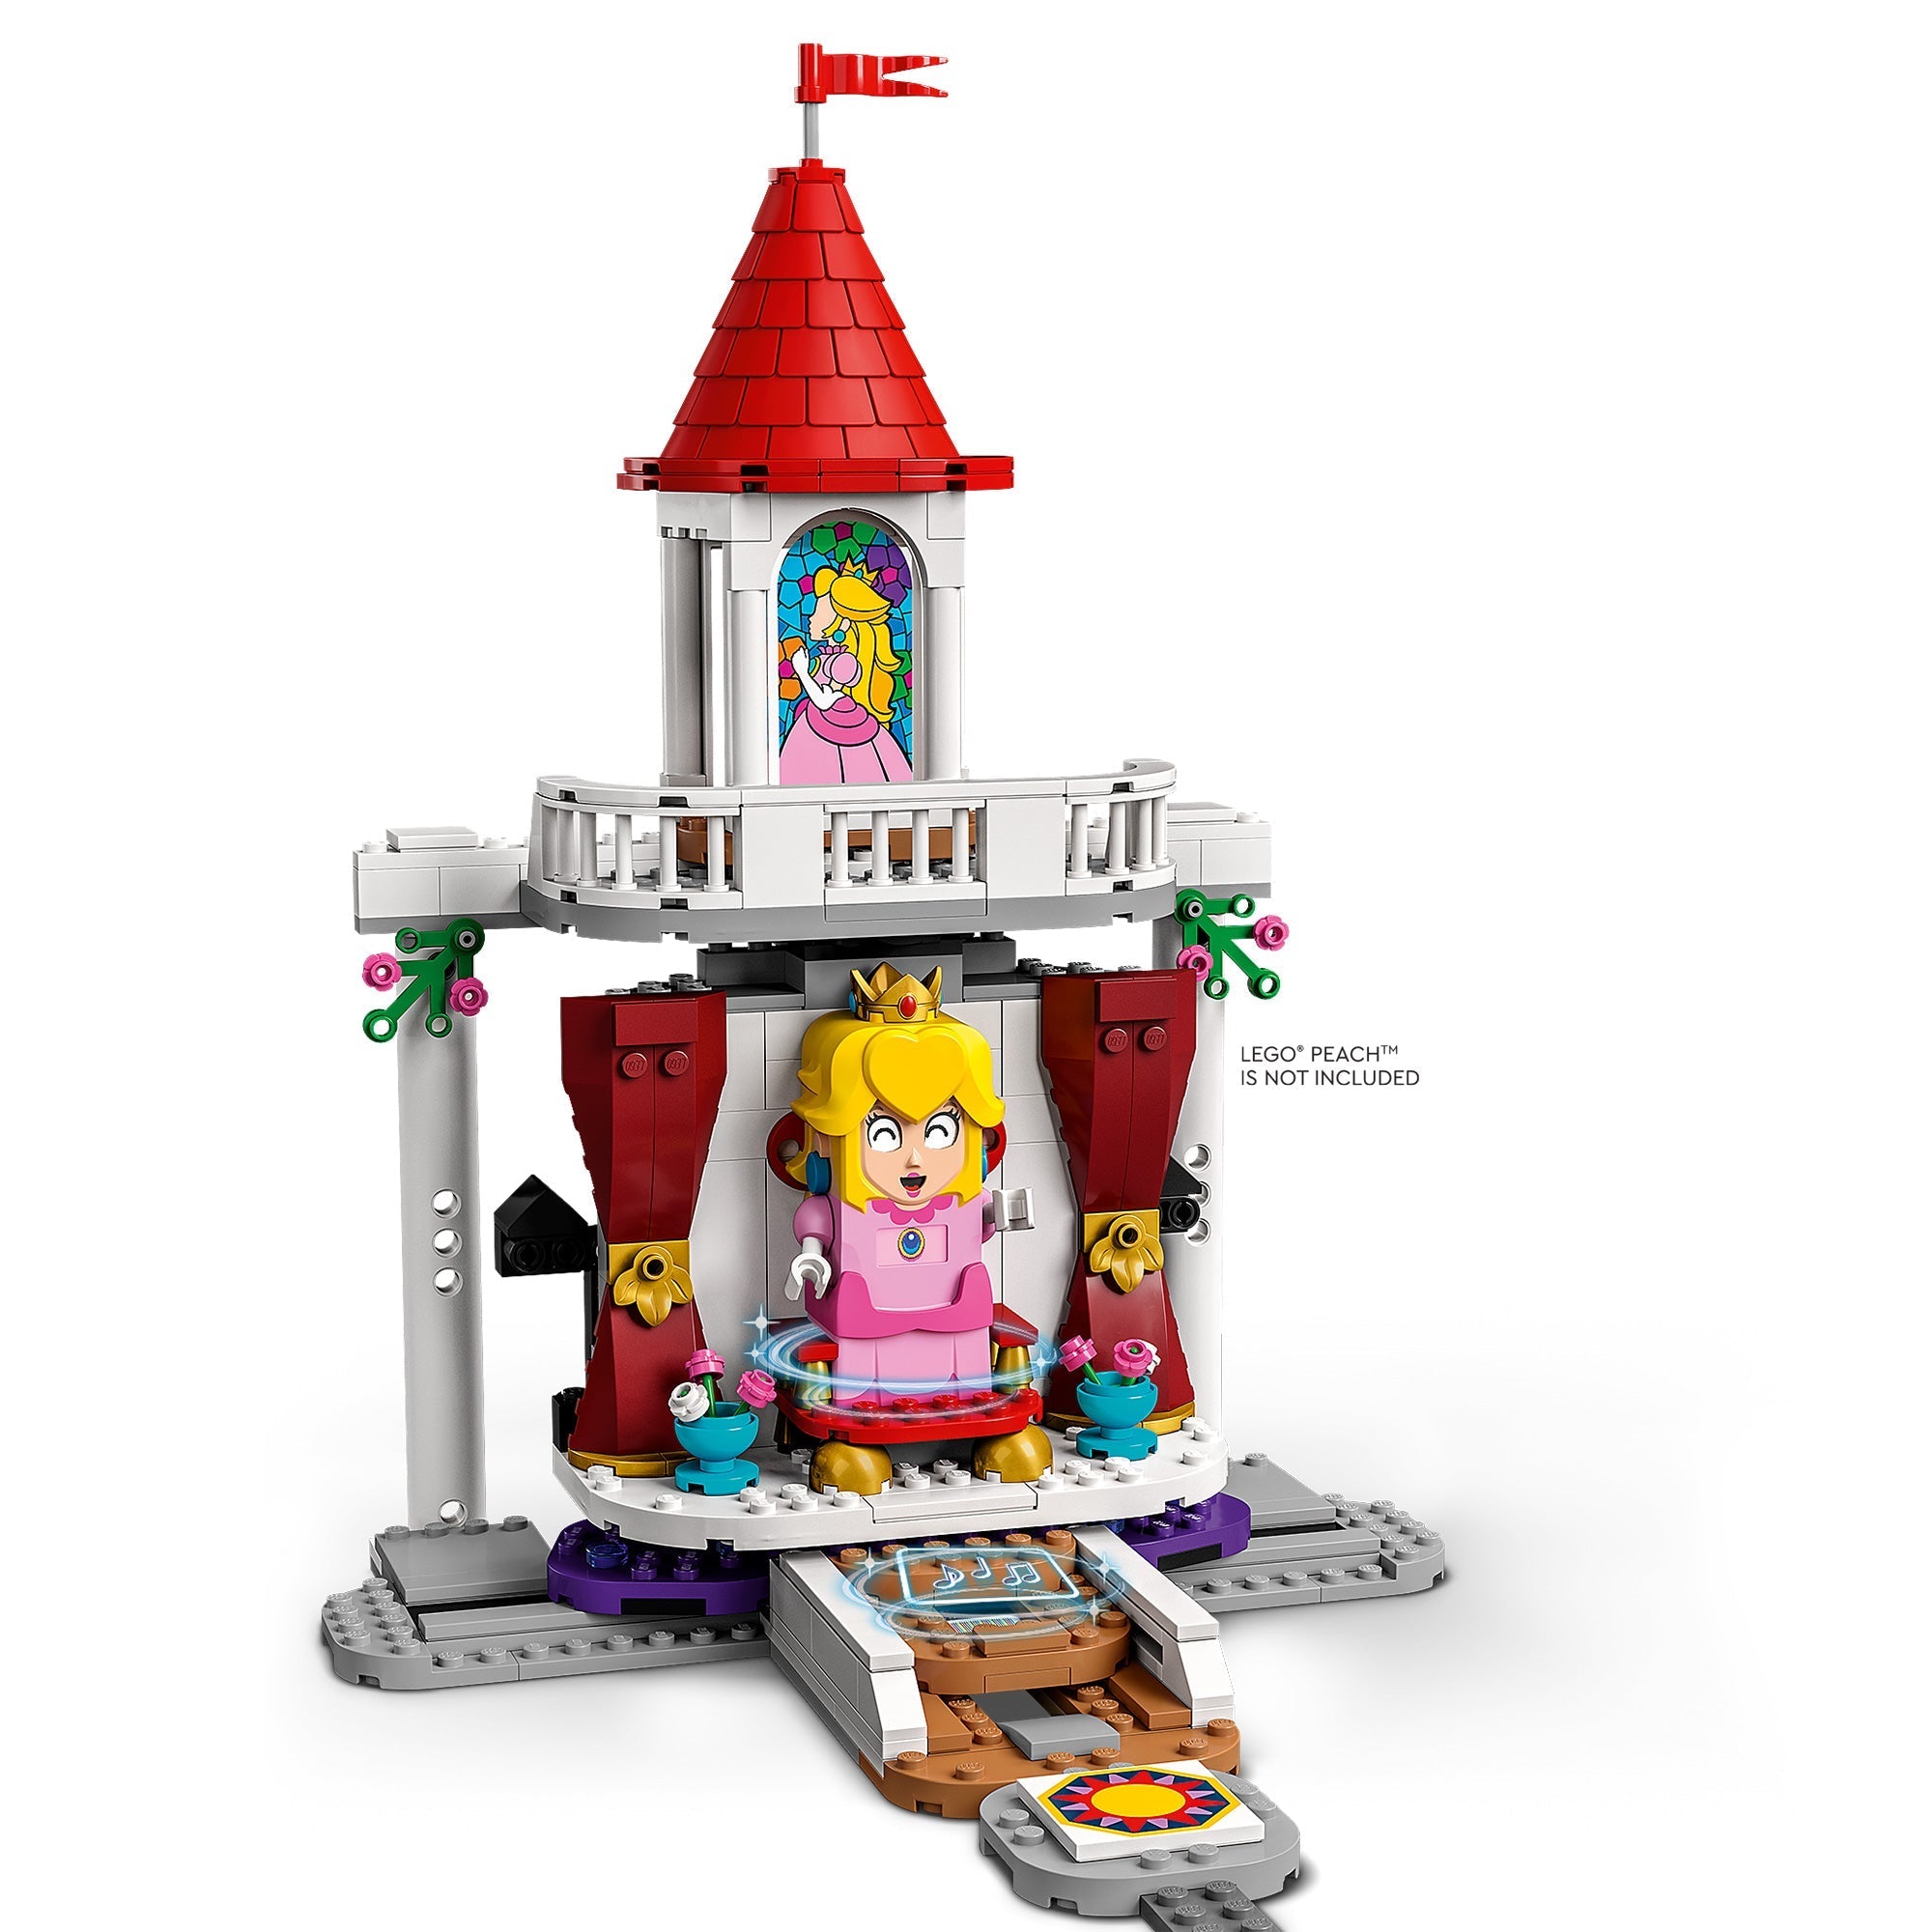 LEGO Super Mario Peach's Castle Expansion Set 71408 6379548 - Best Buy